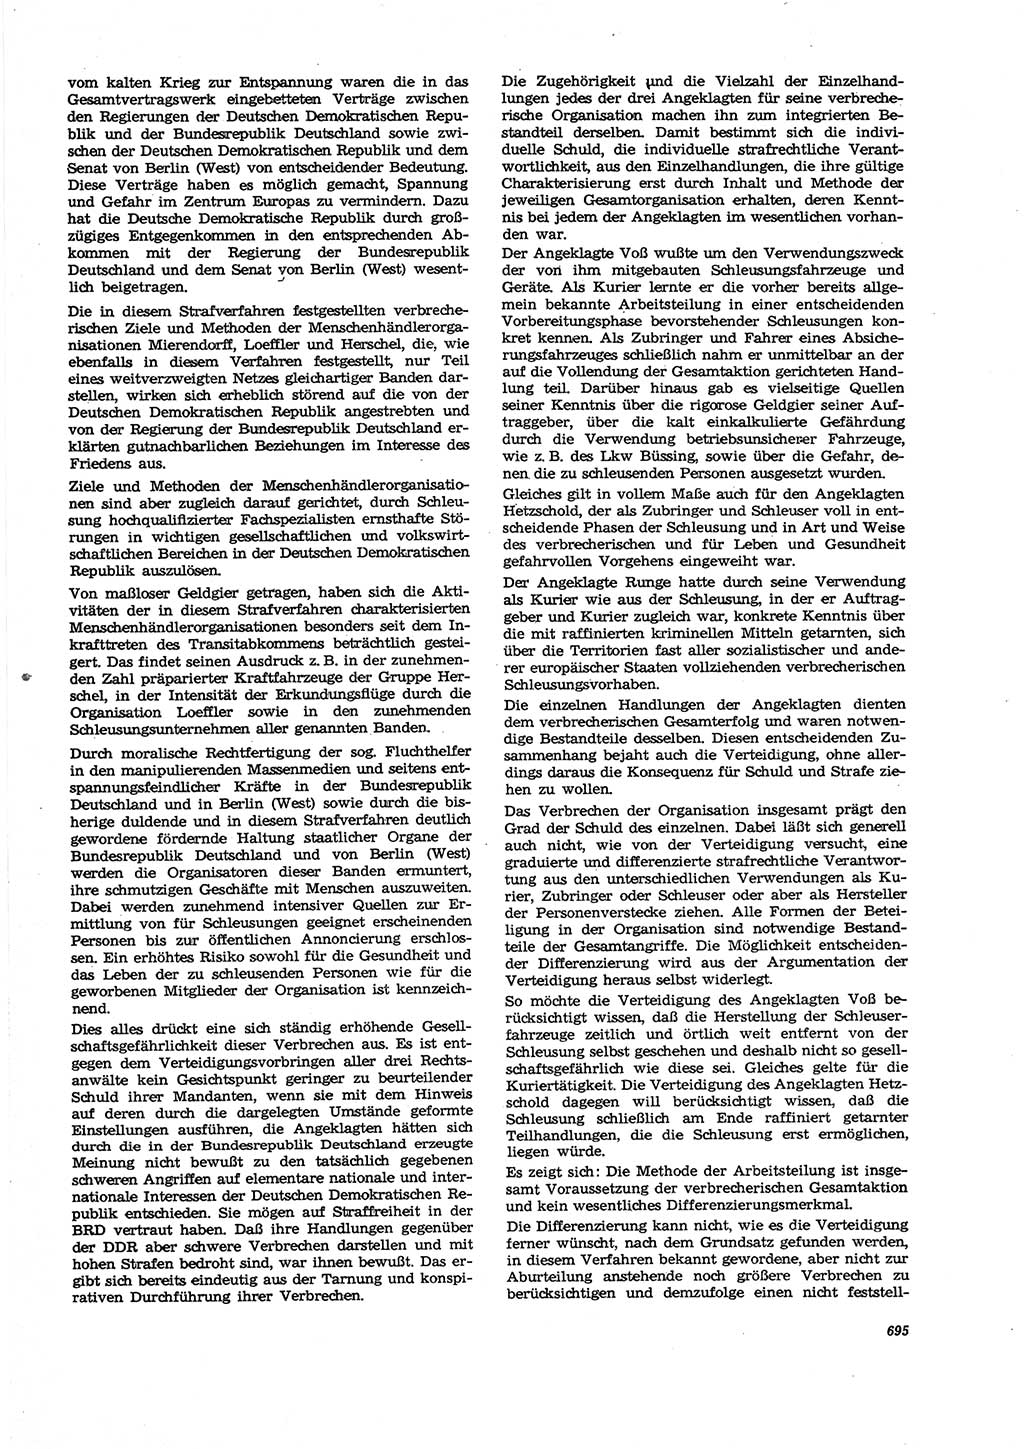 Neue Justiz (NJ), Zeitschrift für Recht und Rechtswissenschaft [Deutsche Demokratische Republik (DDR)], 27. Jahrgang 1973, Seite 695 (NJ DDR 1973, S. 695)